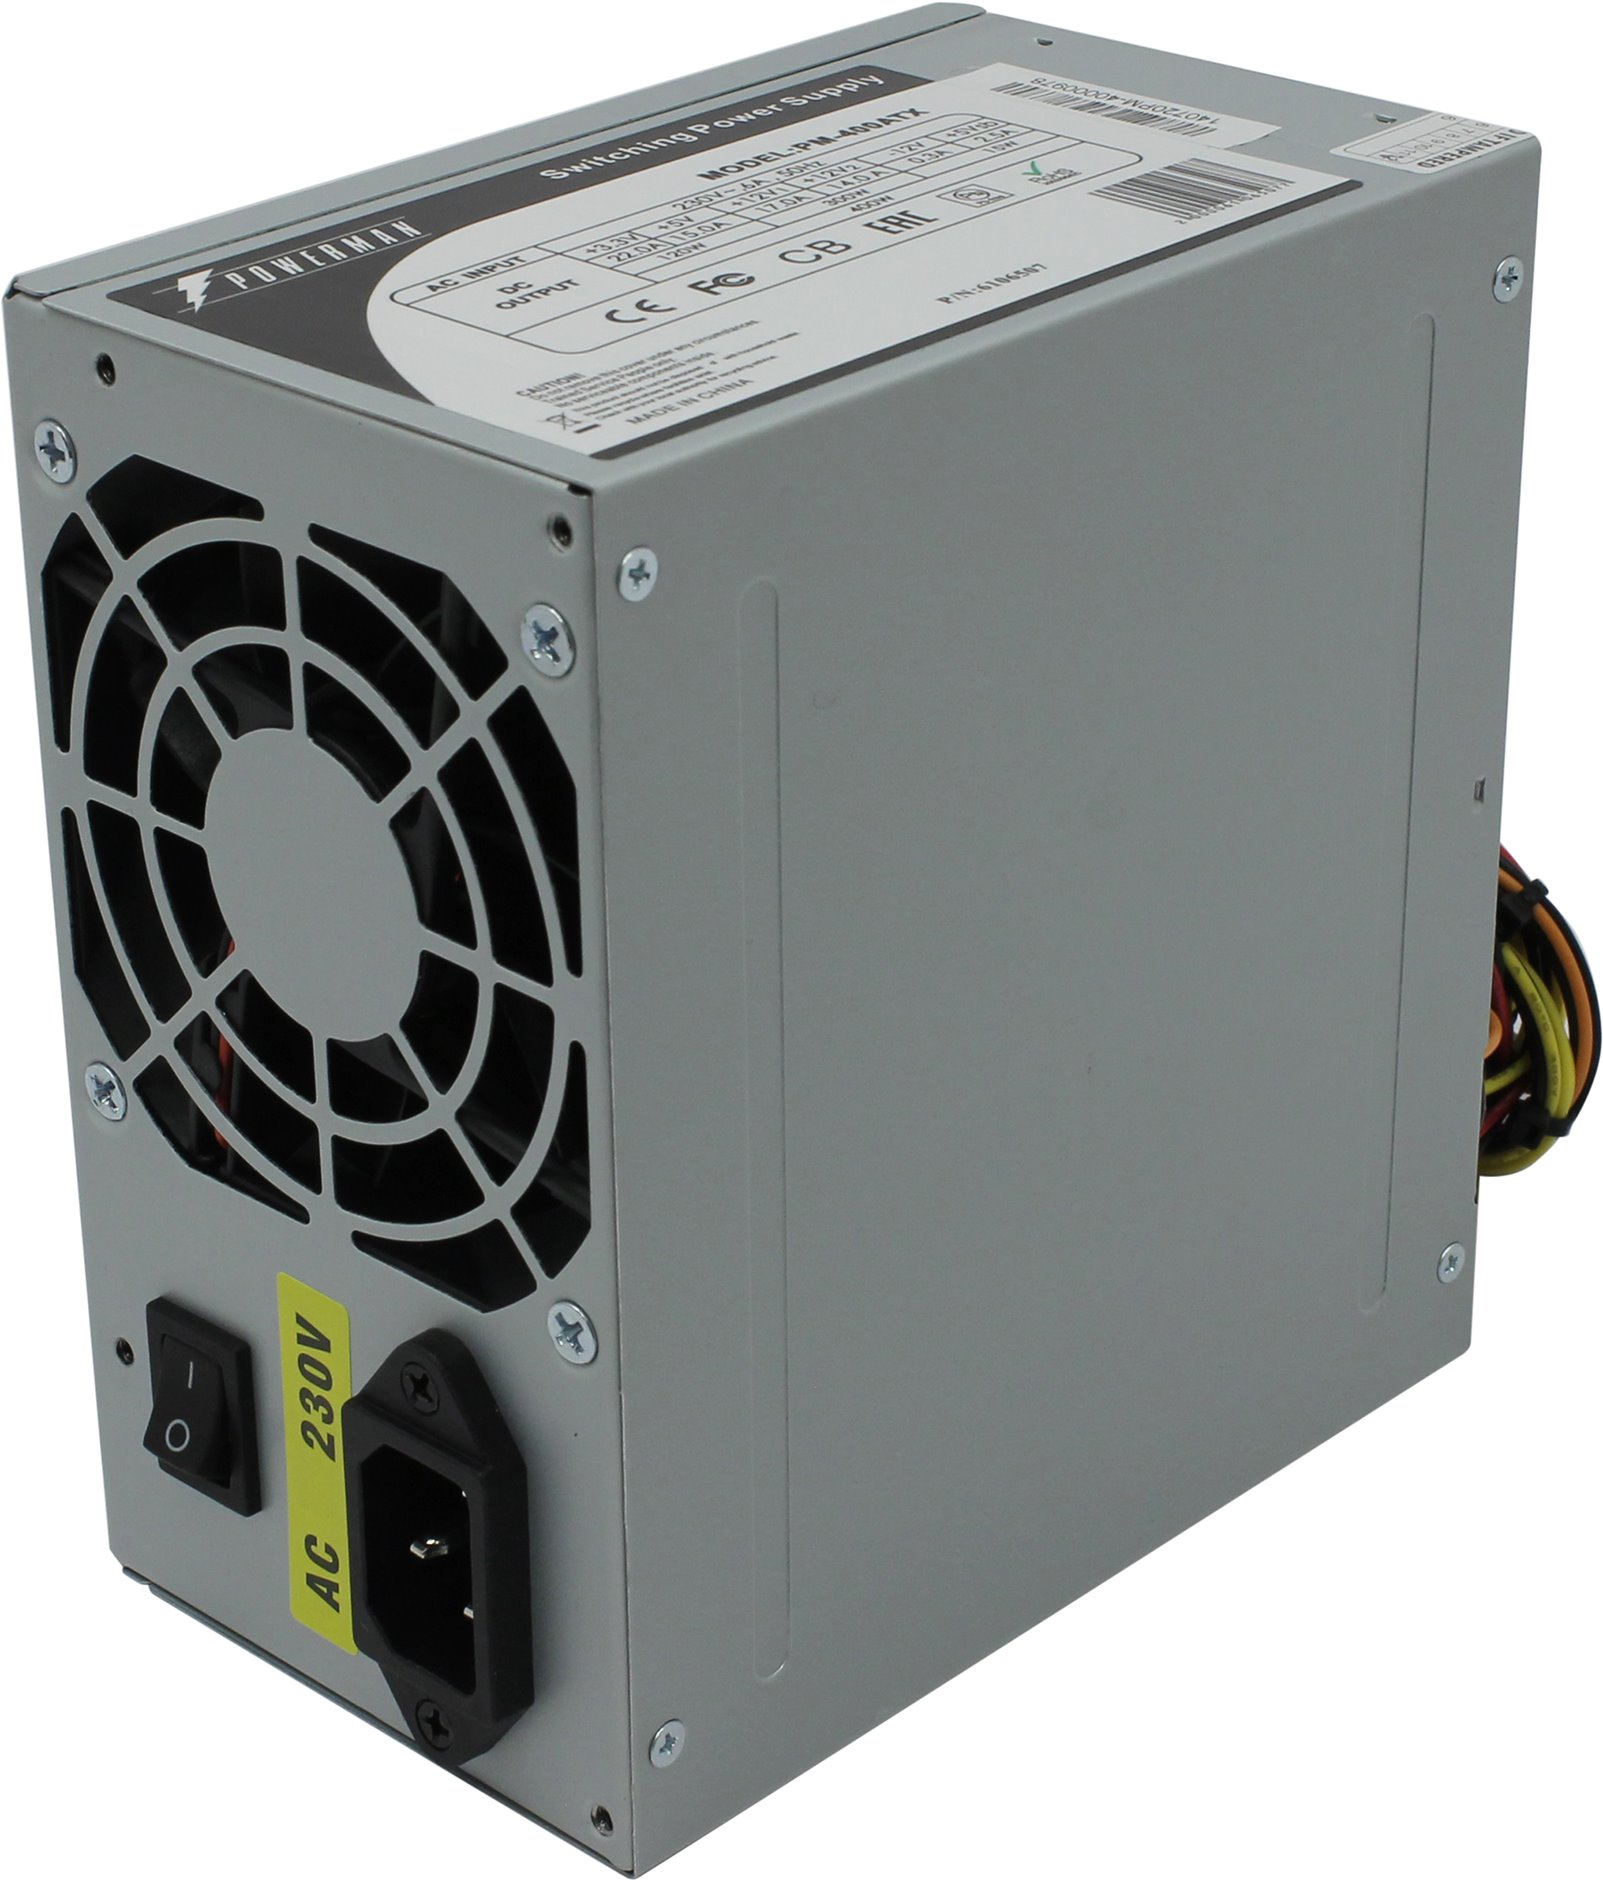 Блок питания PowerMan PM-400ATX, мощность 400 Вт, вентилятор 80x80 мм